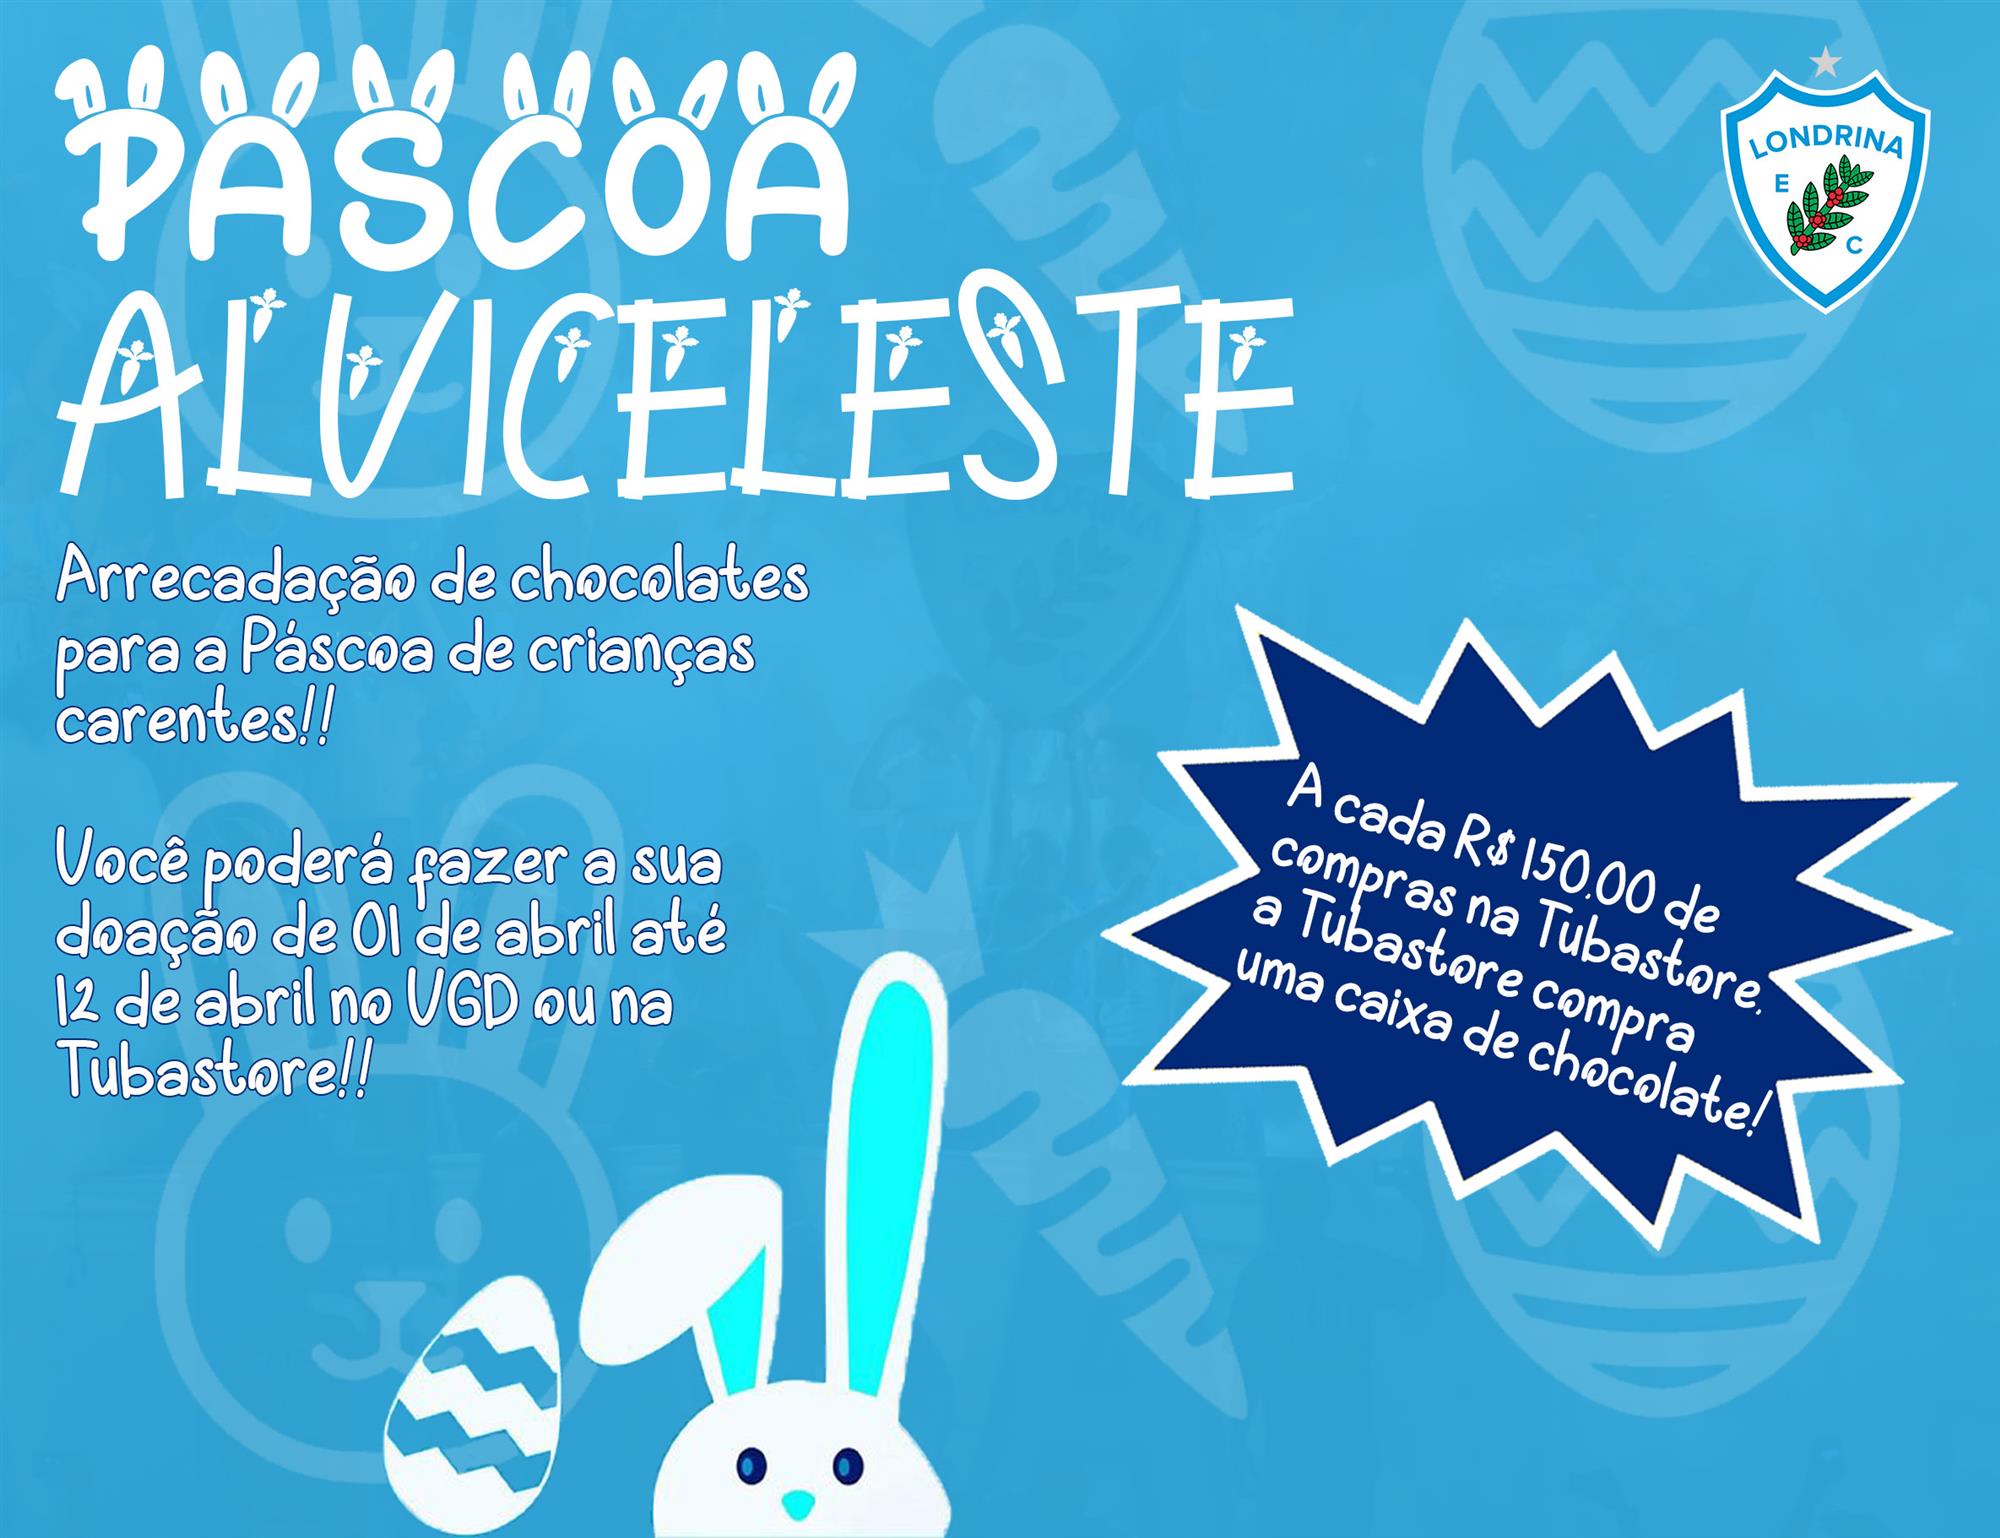 Londrina lança campanha para arrecadação de chocolates na Páscoa